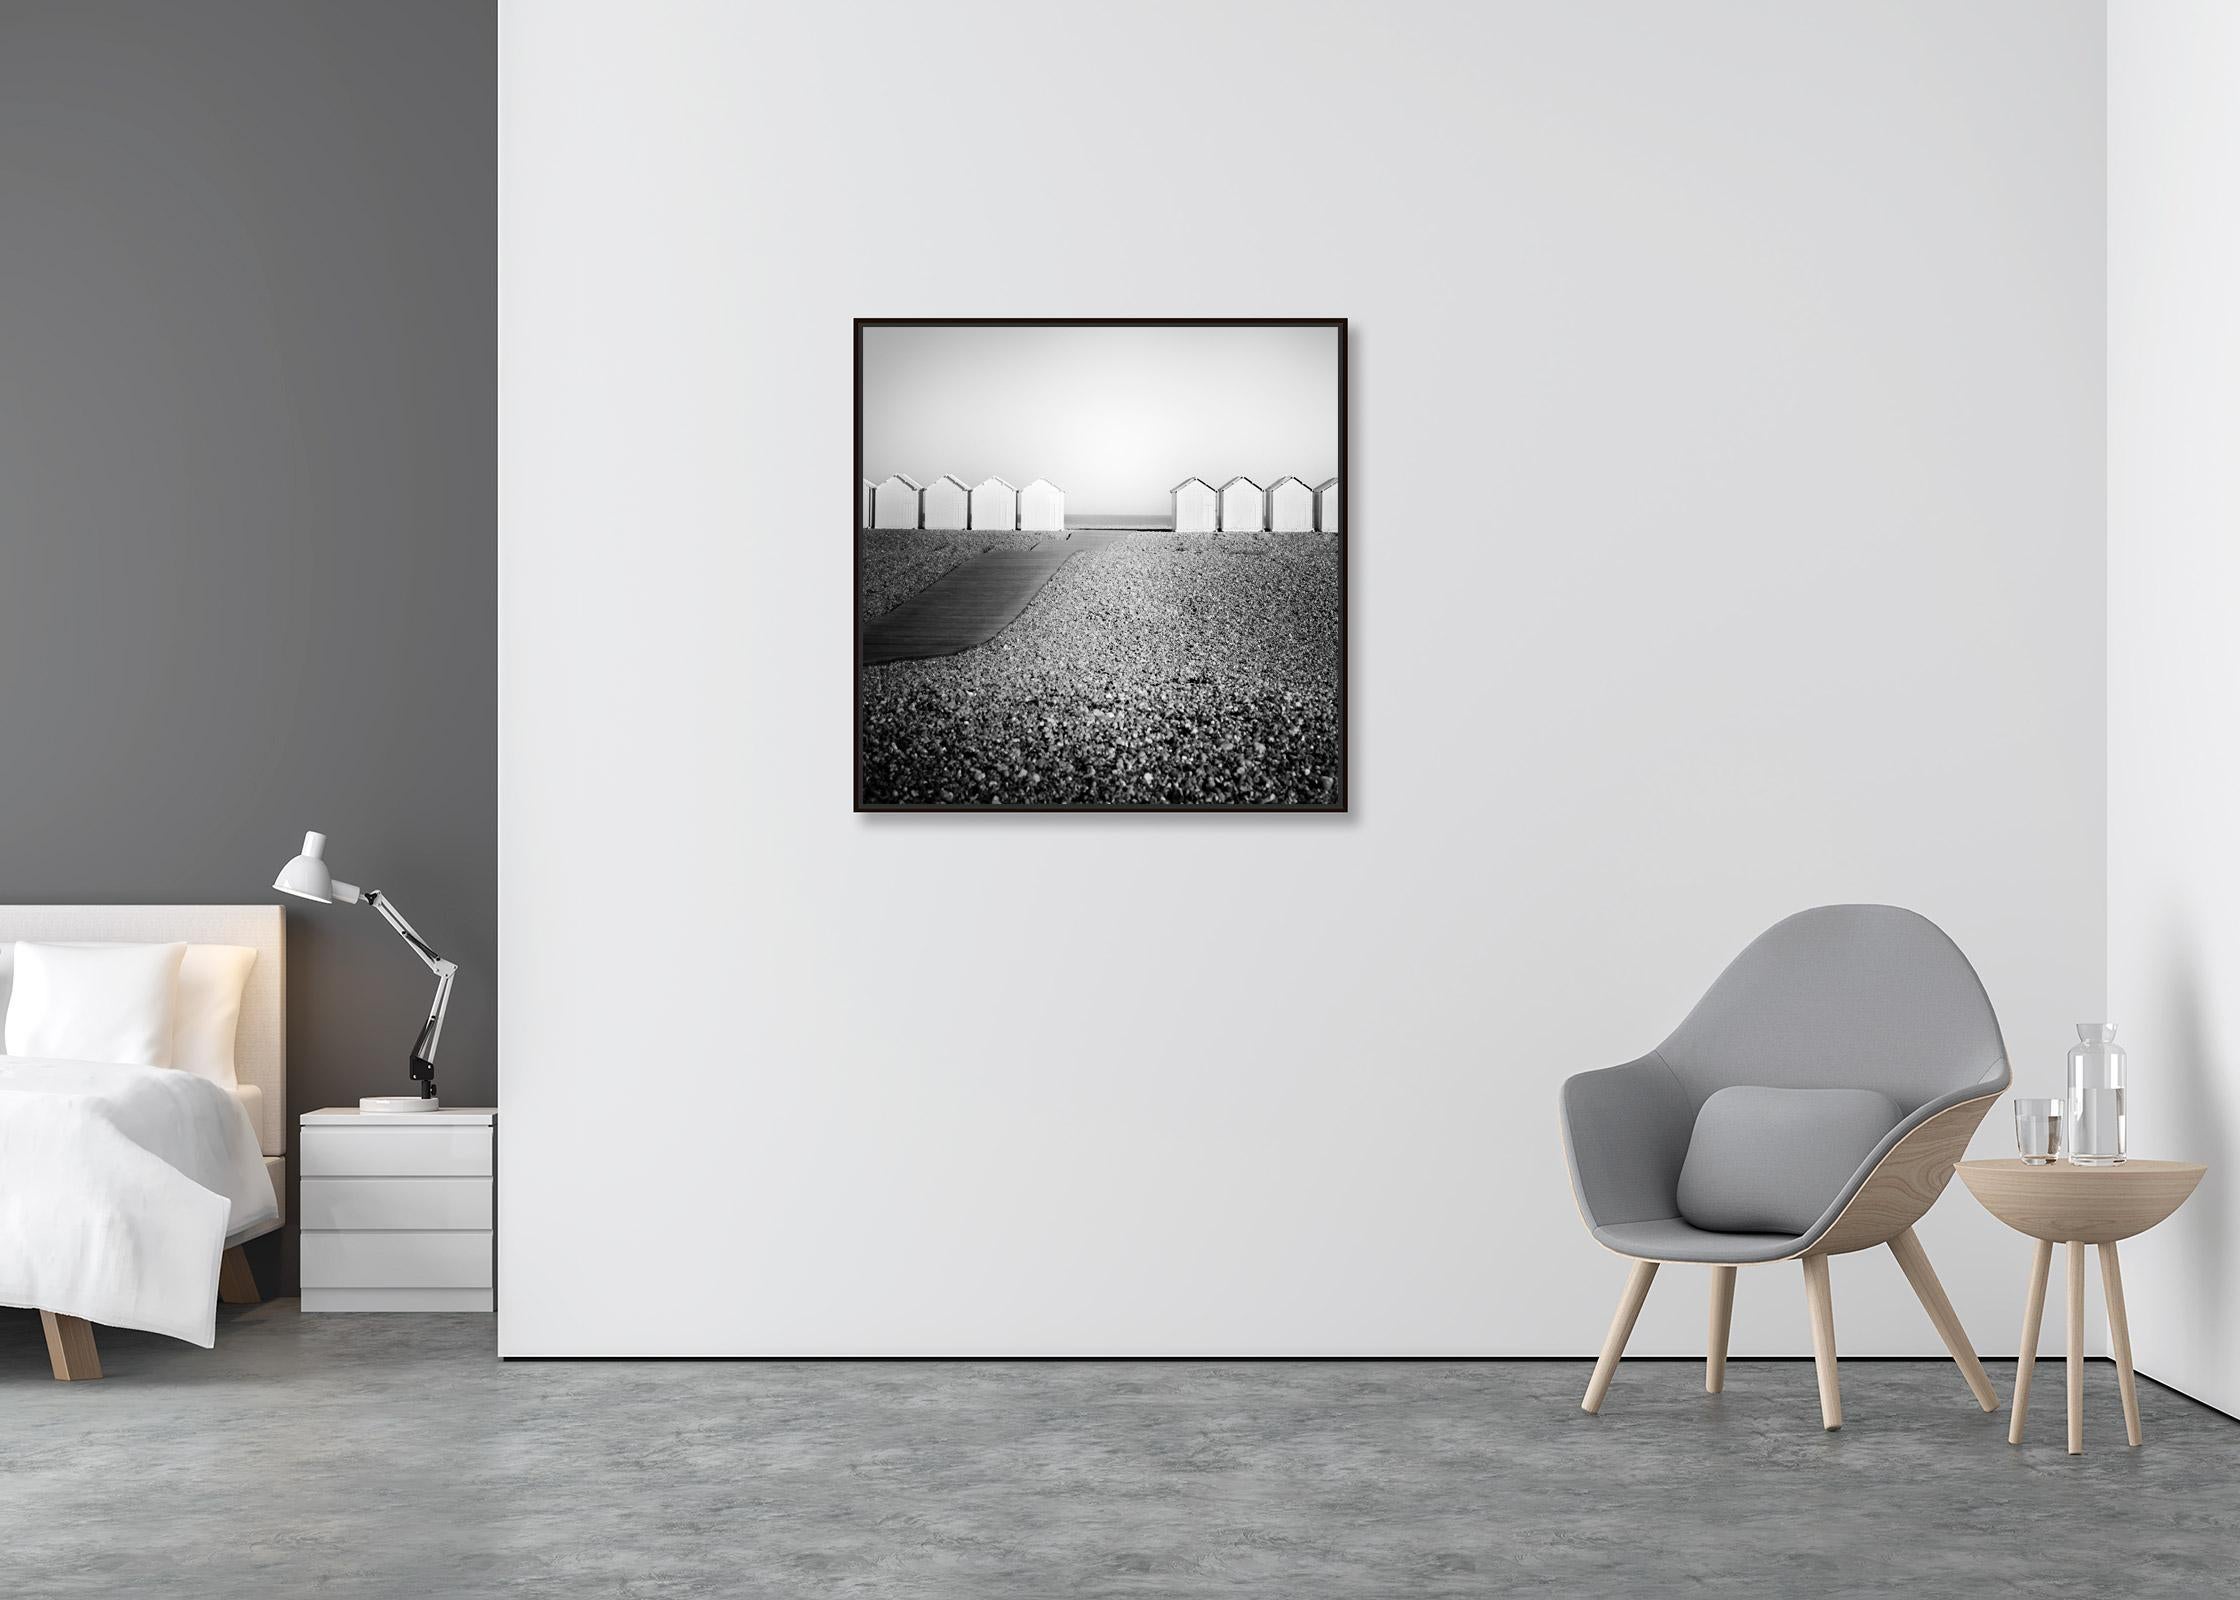 Holzhütten, Promenade, Rocky Beach, Frankreich, Schwarz-Weiß-Landschaftsfotografie (Zeitgenössisch), Photograph, von Gerald Berghammer